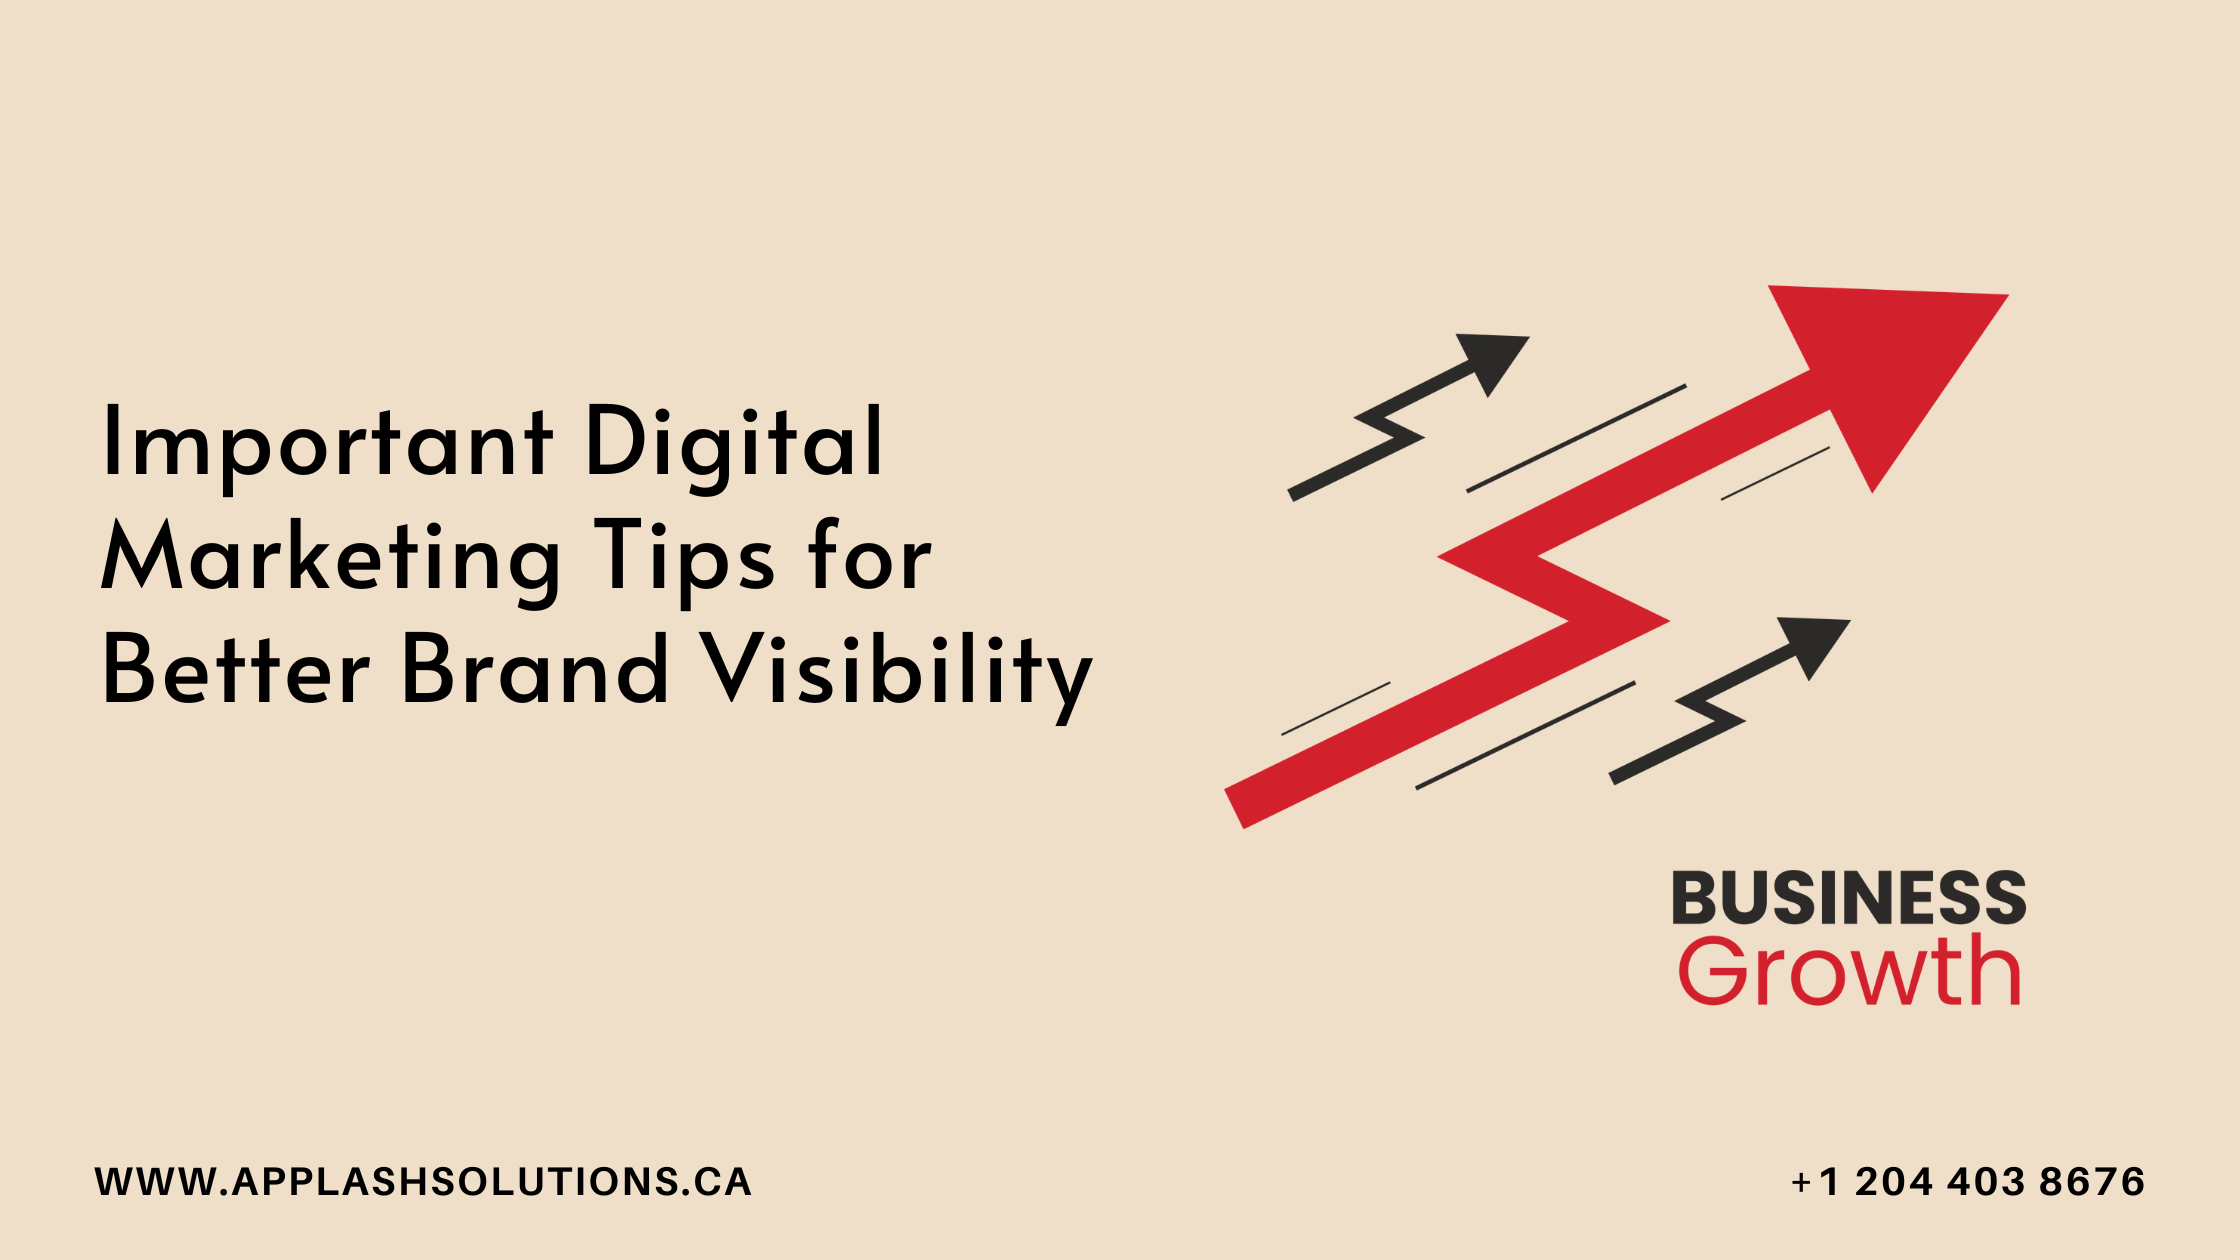 Digital Marketing Tips for Better Brand Visibility